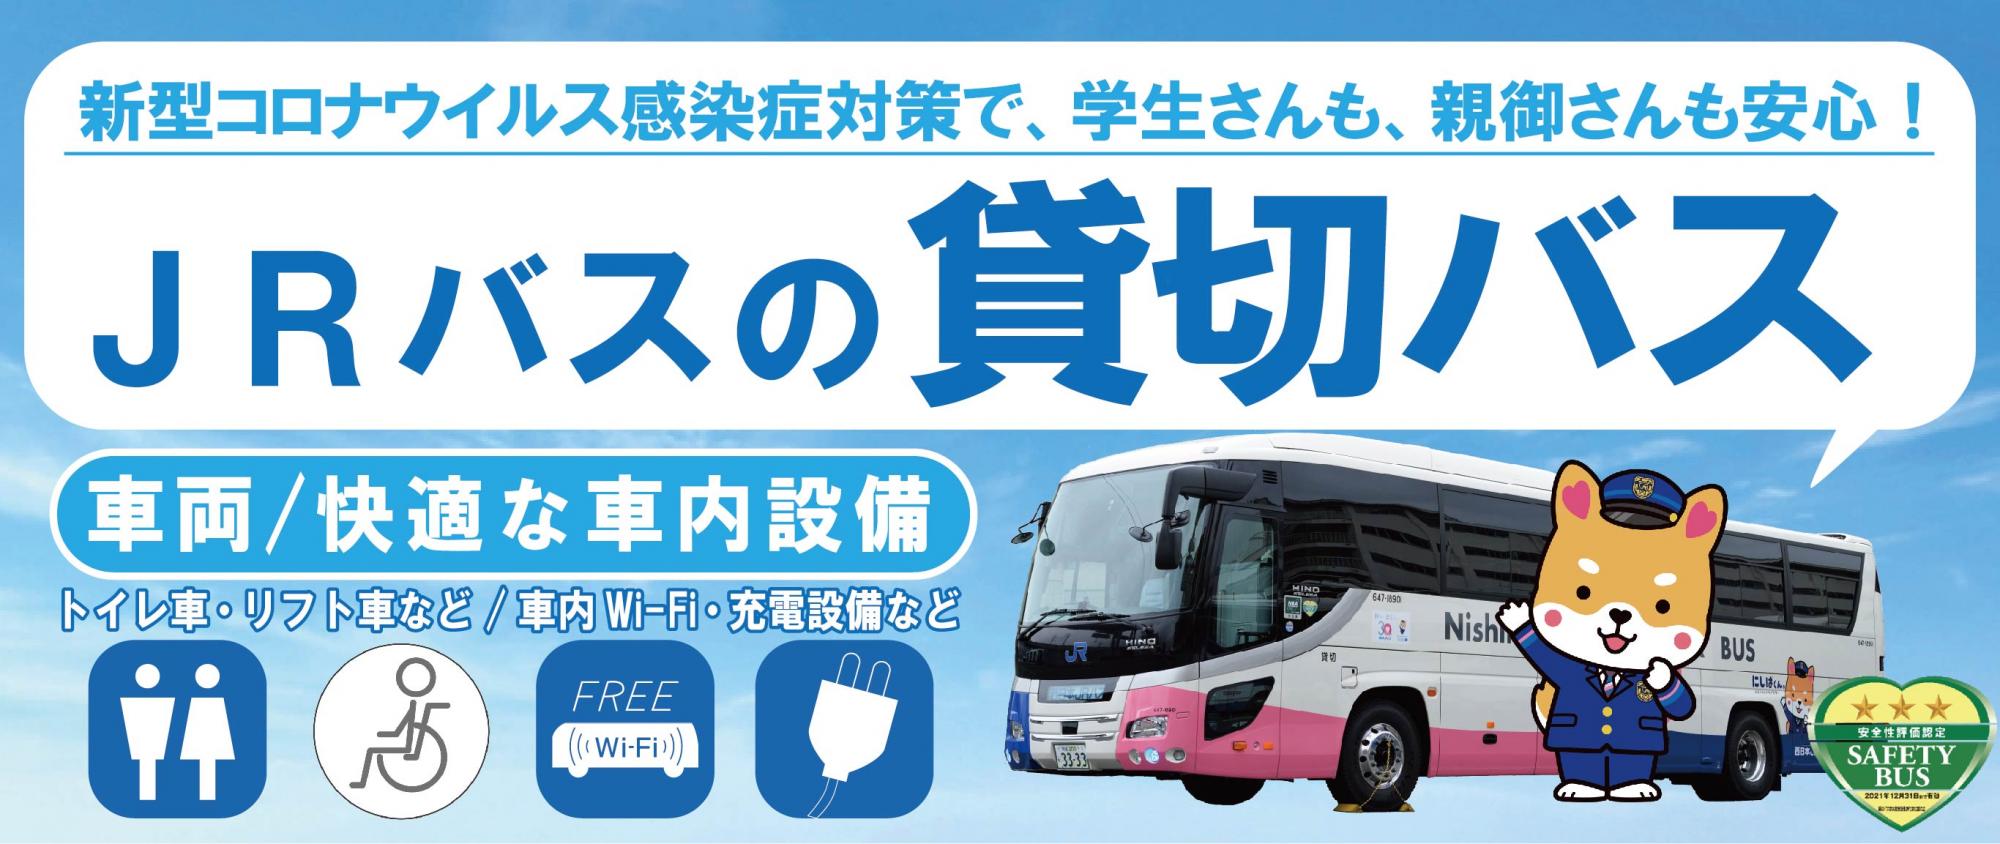 西日本jrバス 高速バス 夜行バス 定期観光バス バスツアー 一般路線バス 貸切バス